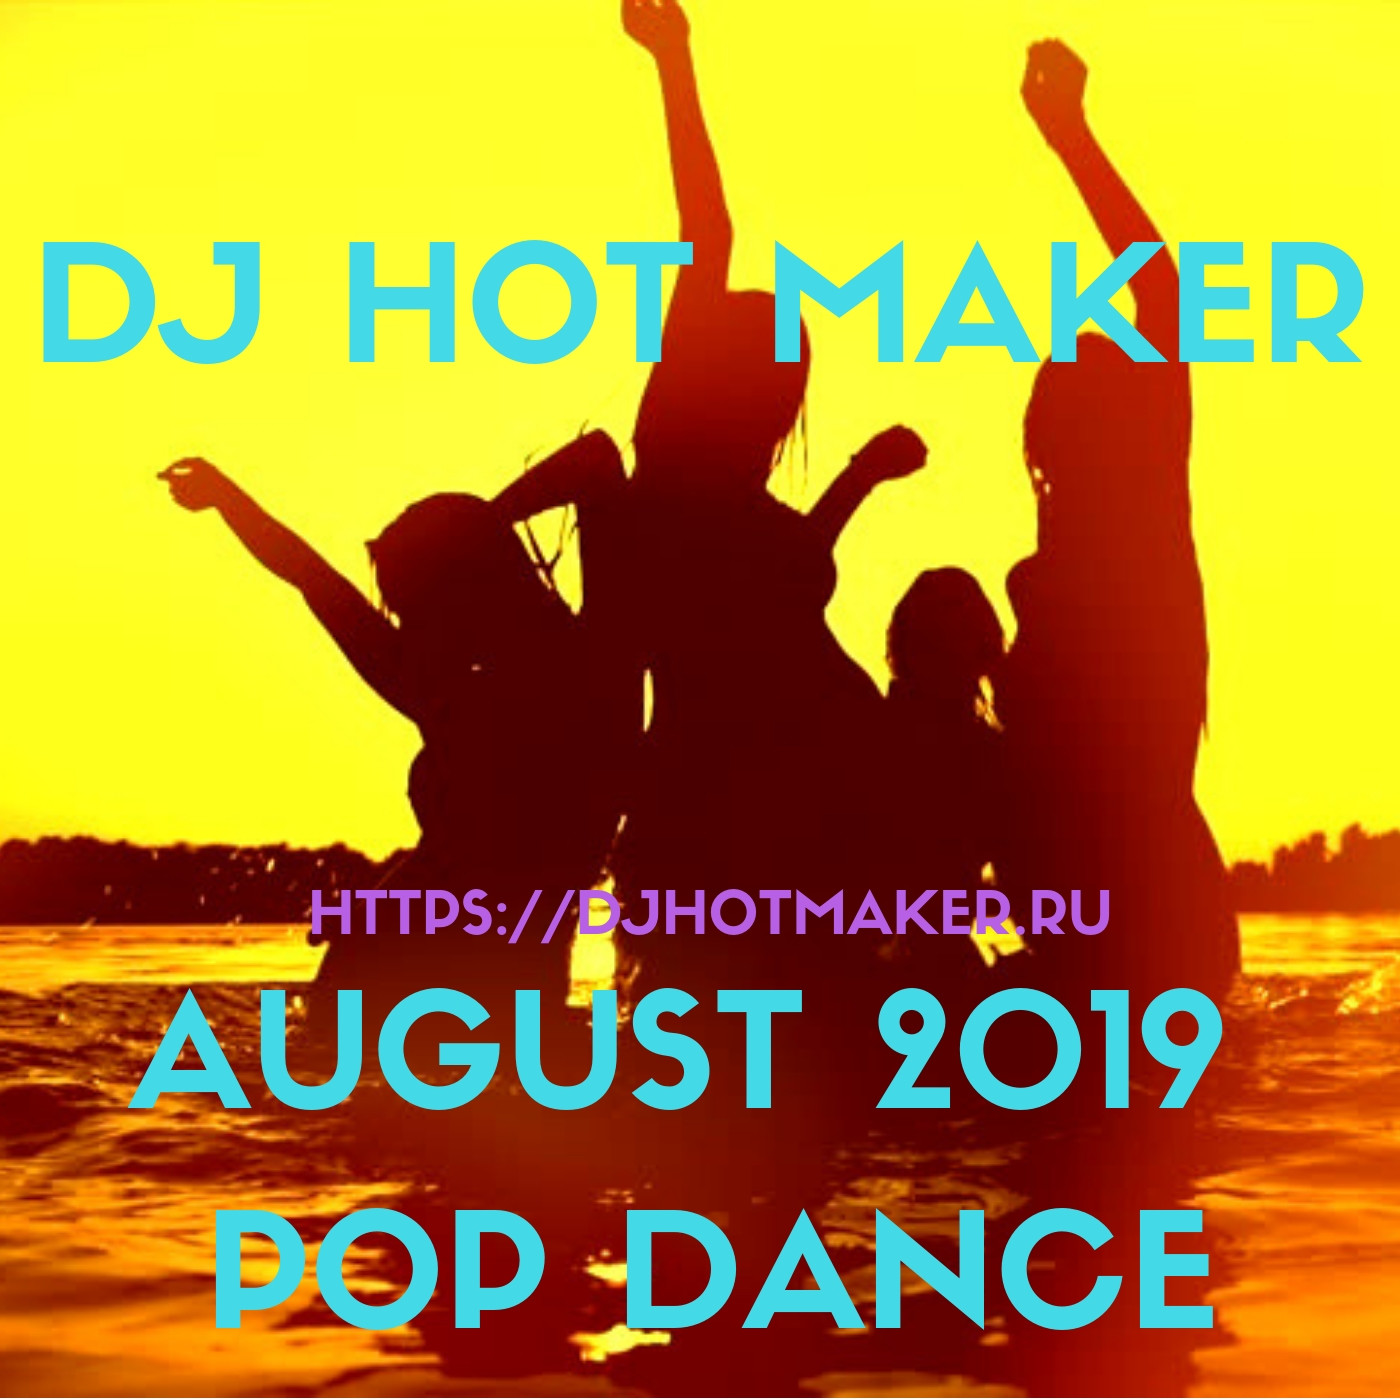 DJ Hot Maker - August 2019 Pop Dance Promo